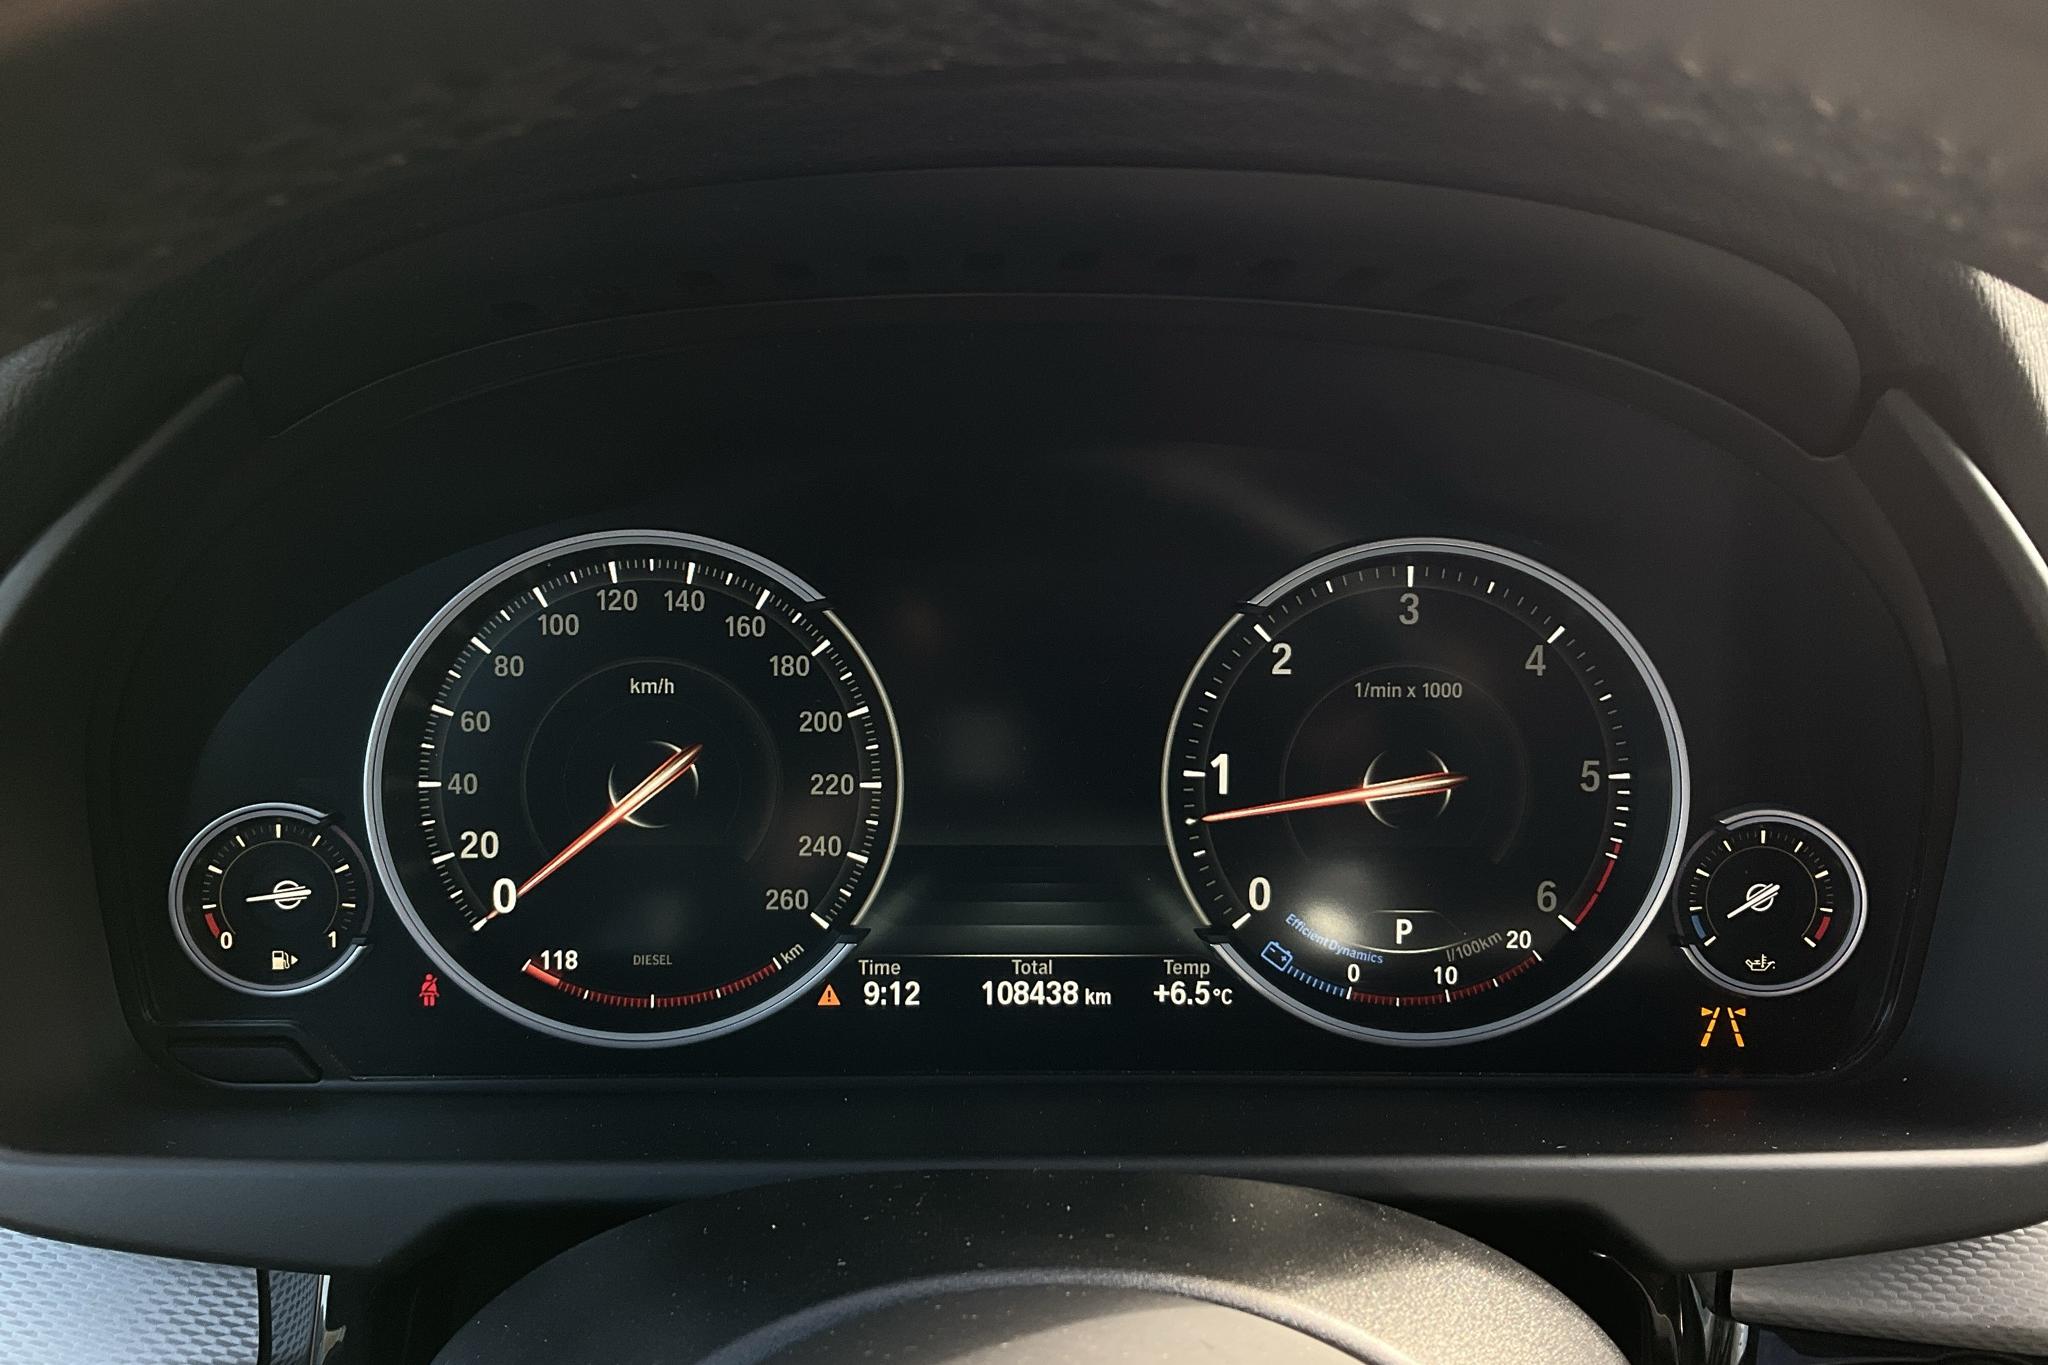 BMW X5 xDrive30d, F15 (258hk) - 108 440 km - Automatic - white - 2018